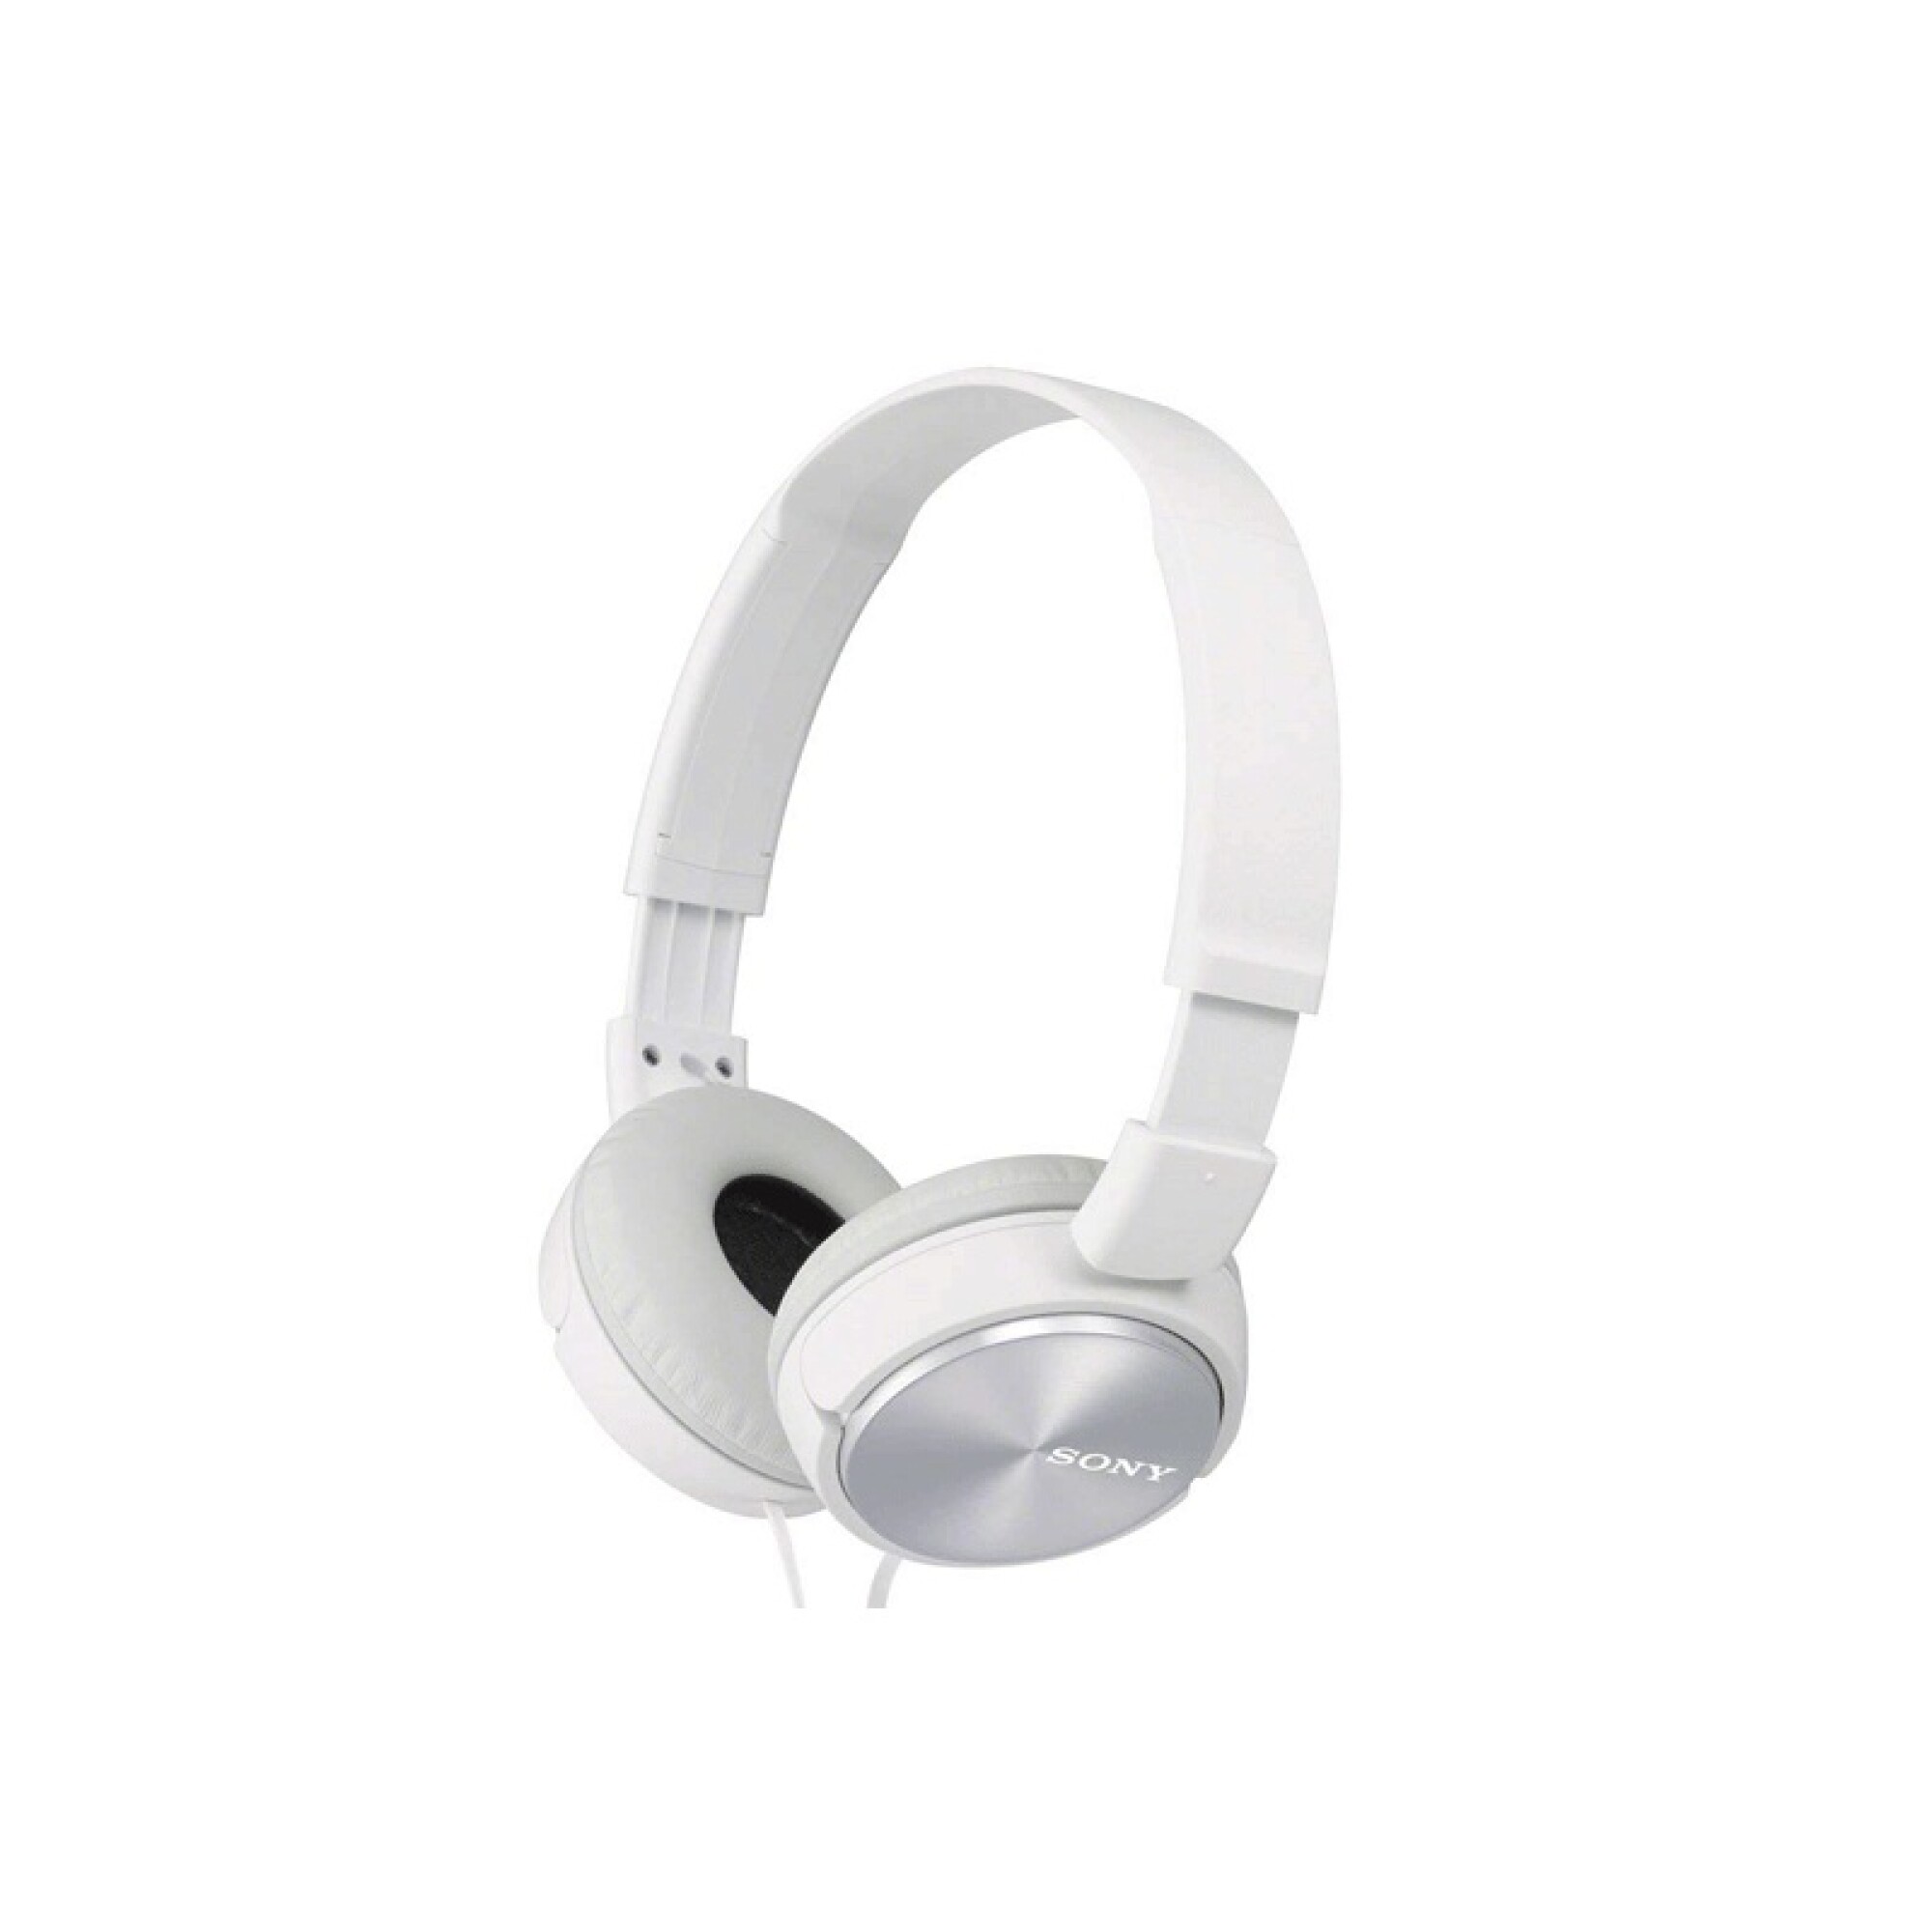 Sony MDR10R Hi-Res Auriculares estéreo con cable (blanco)